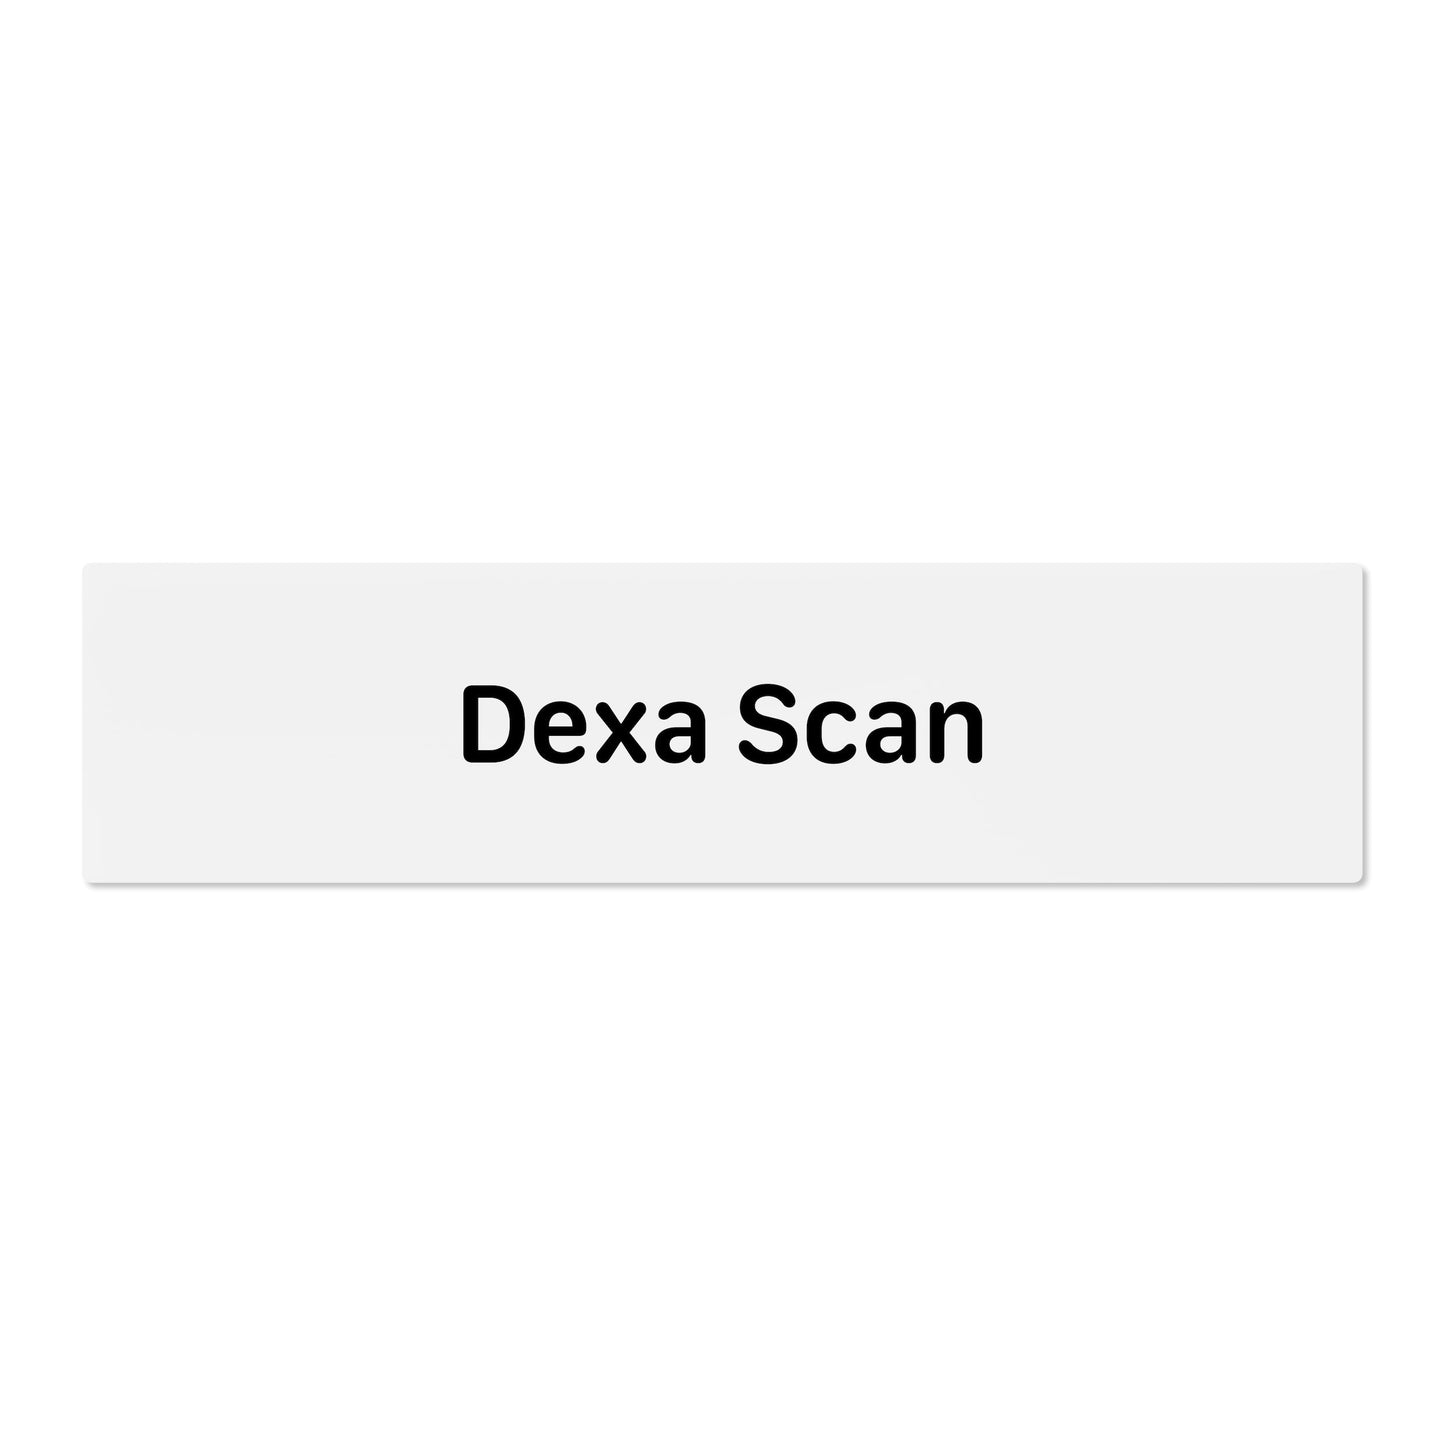 Dexa Scan